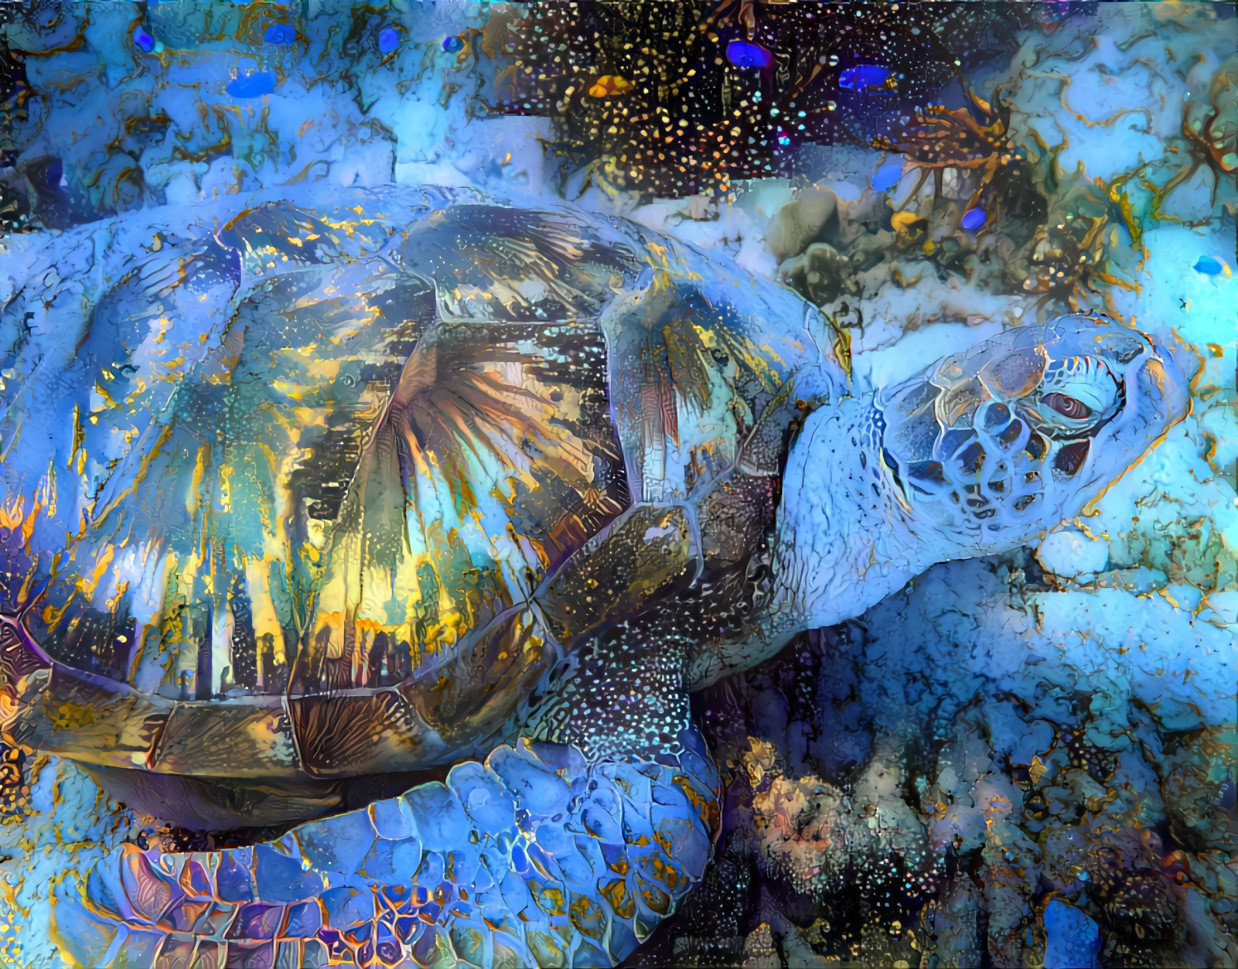 Sea Turtle.  Original photo by James Thornton on Unsplash.